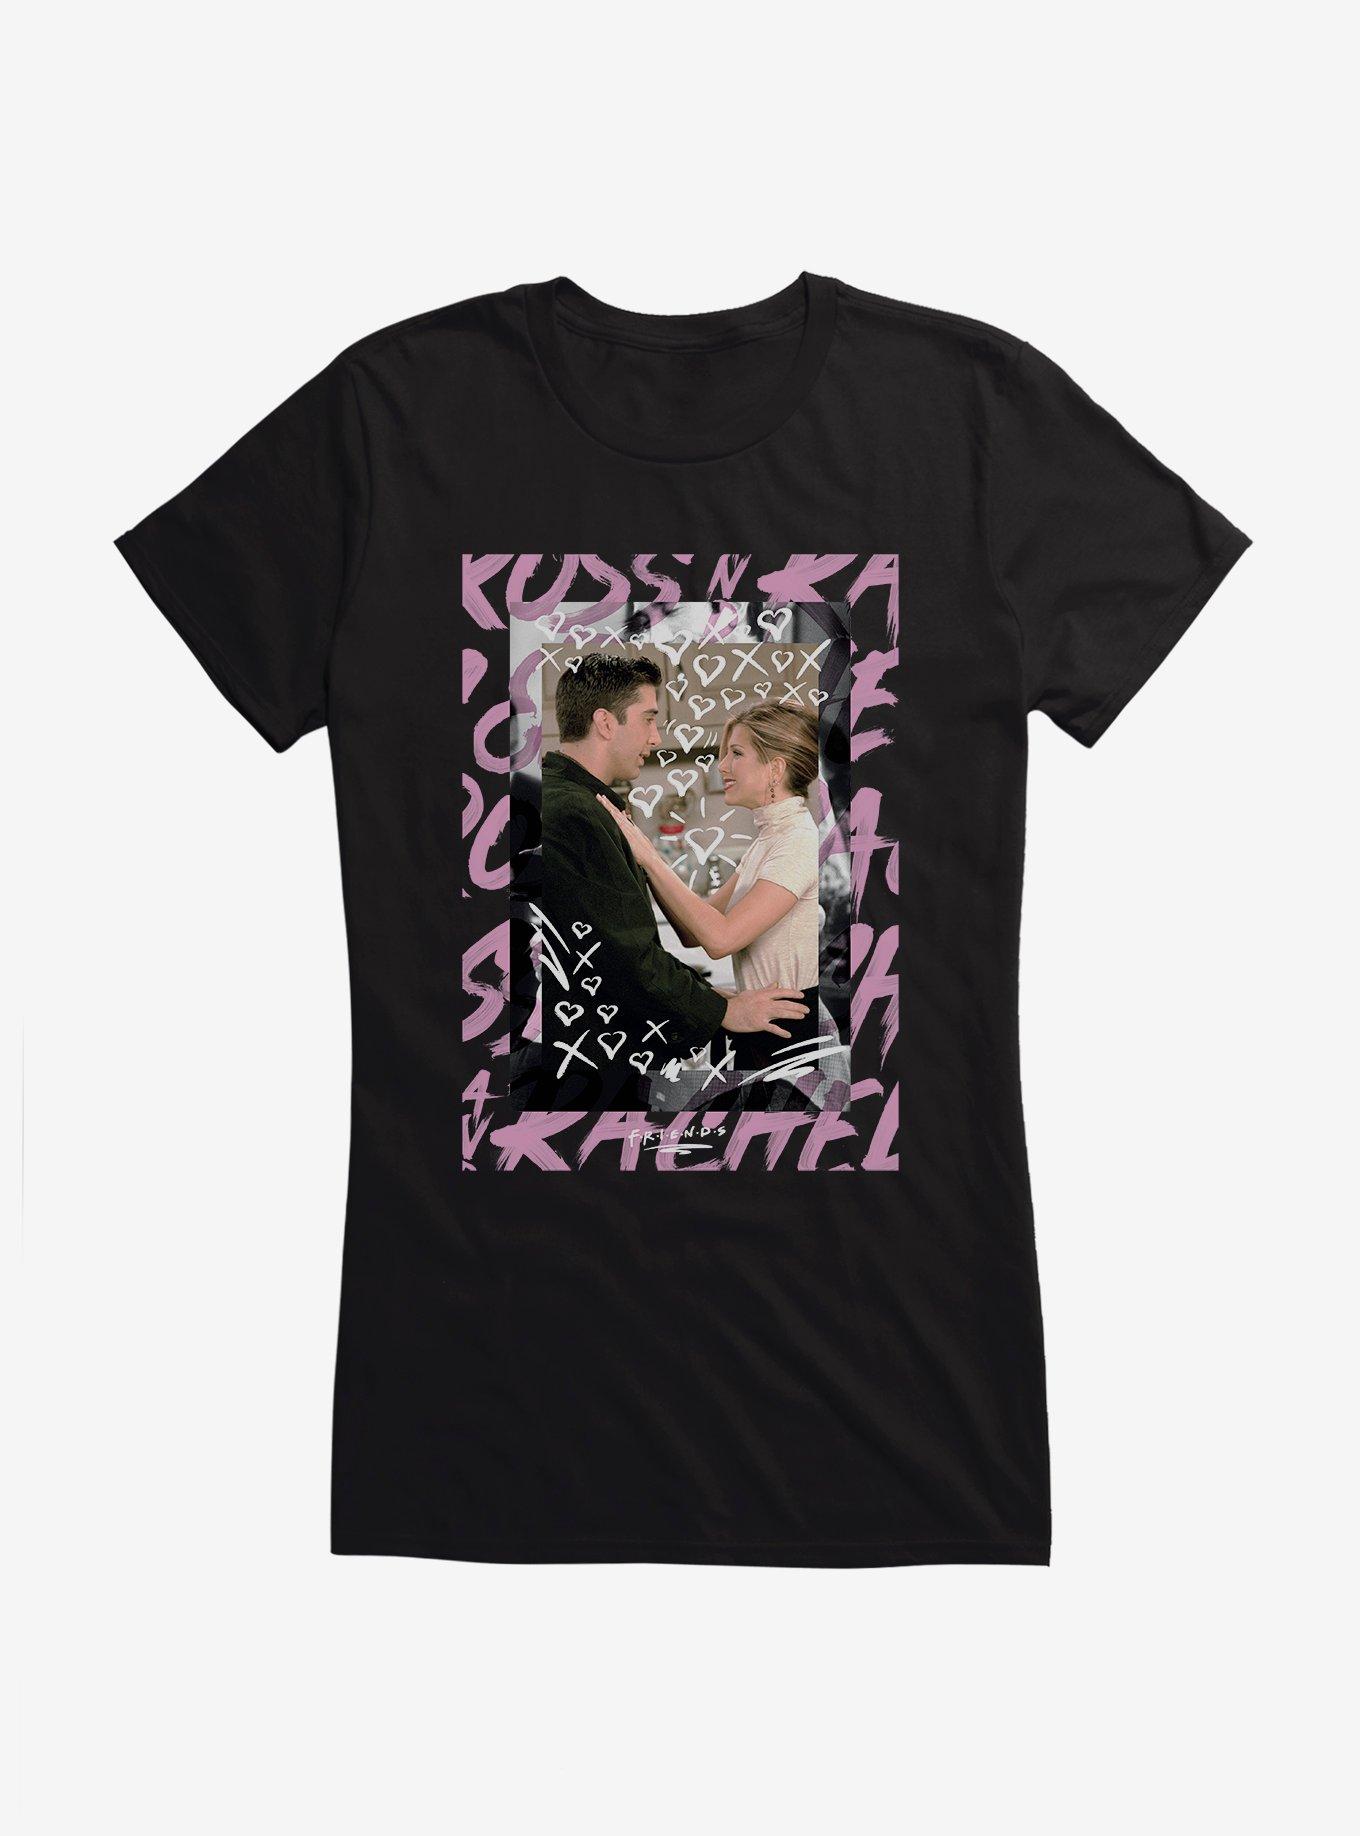 Friends Ross Rachel XOXO Girls T-Shirt